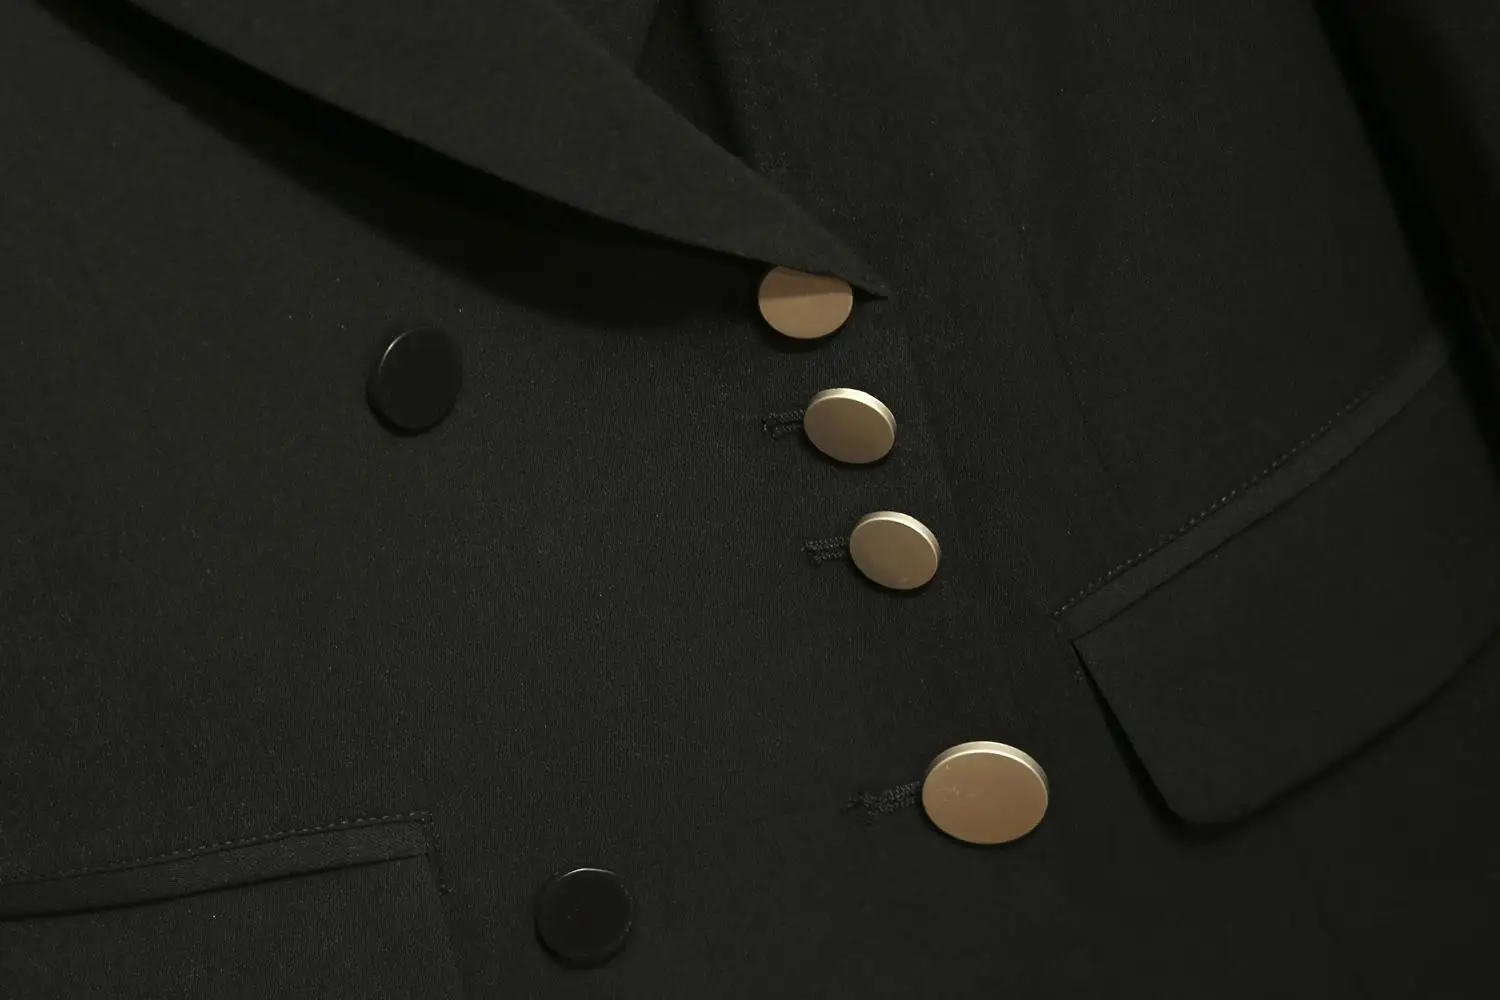 XL-5XL Плюс Размер Осень Зима Женский Блейзер костюм черный женский офисный жакет двойные приталенные пиджаки Большой размер женское пальто Верхняя одежда